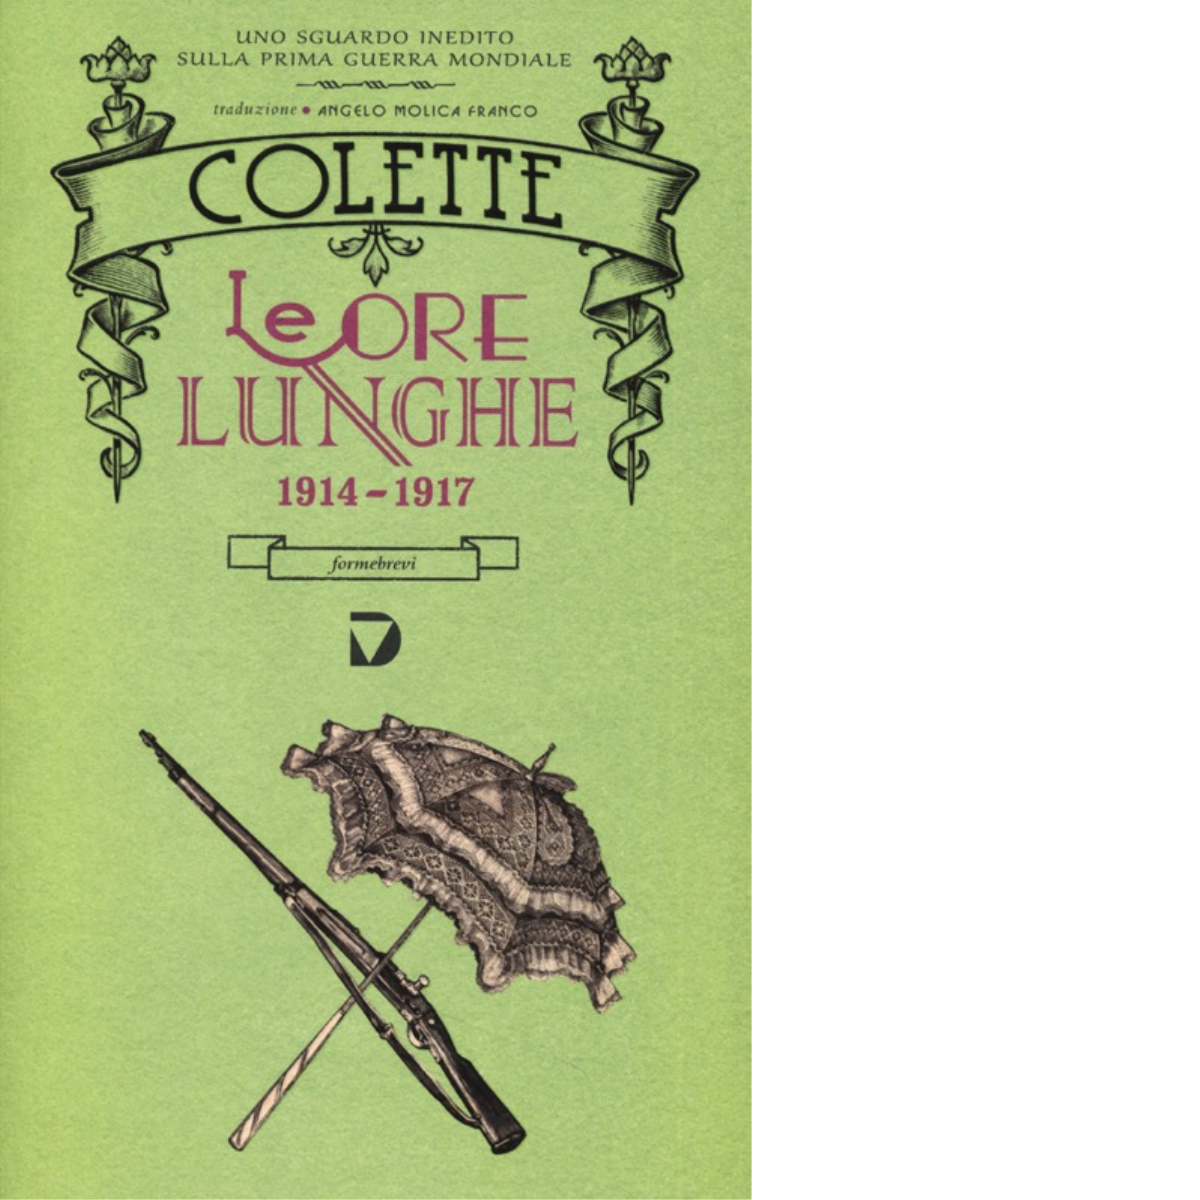 Le ore lunghe 1914-1917 di Colette - Del Vecchio editore, 2013 libro usato